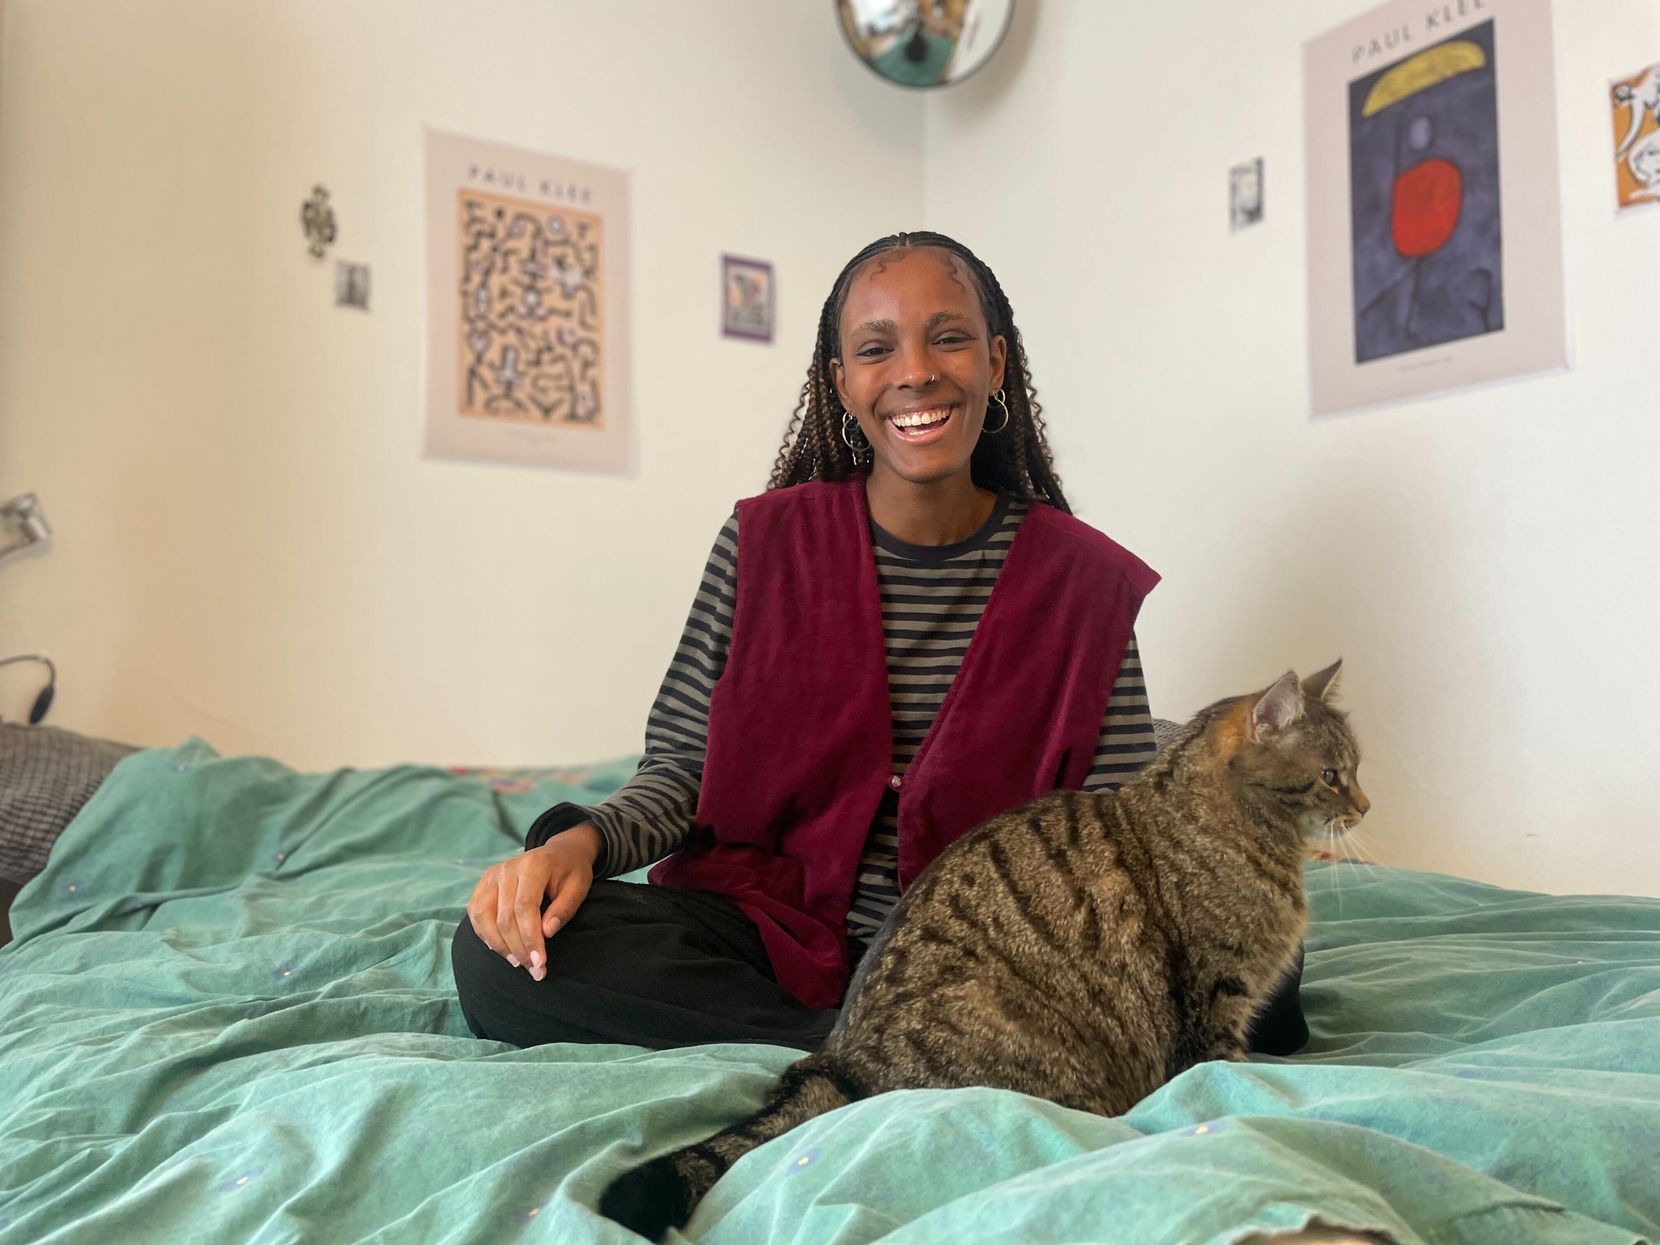 Eine junge Frau mit Zöpfchen sitzt auf ihrem Bett, vor sich eine getigerte Katze.